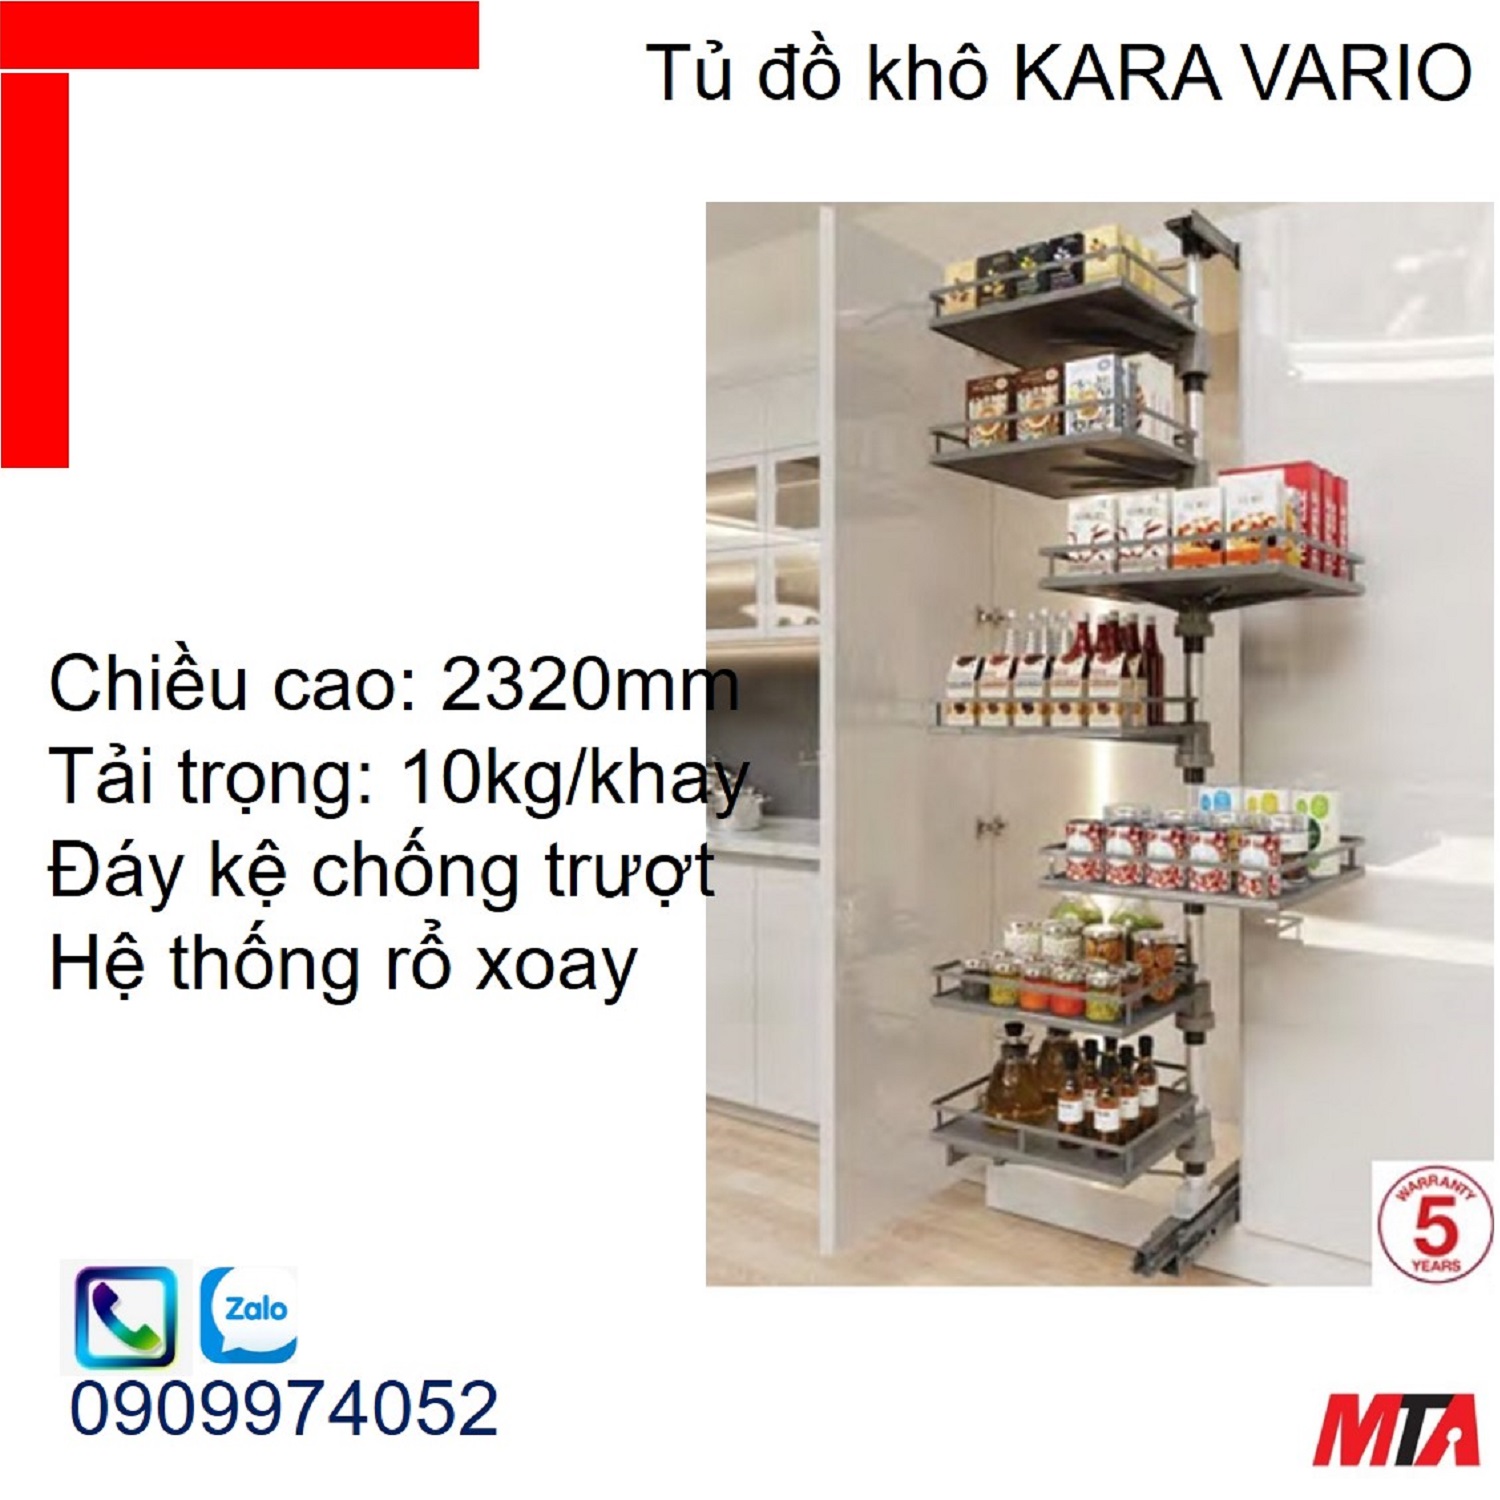 Phụ kiện tủ bếp KOSMO KARA VARIO 595.82.815 tủ cao 2320mm